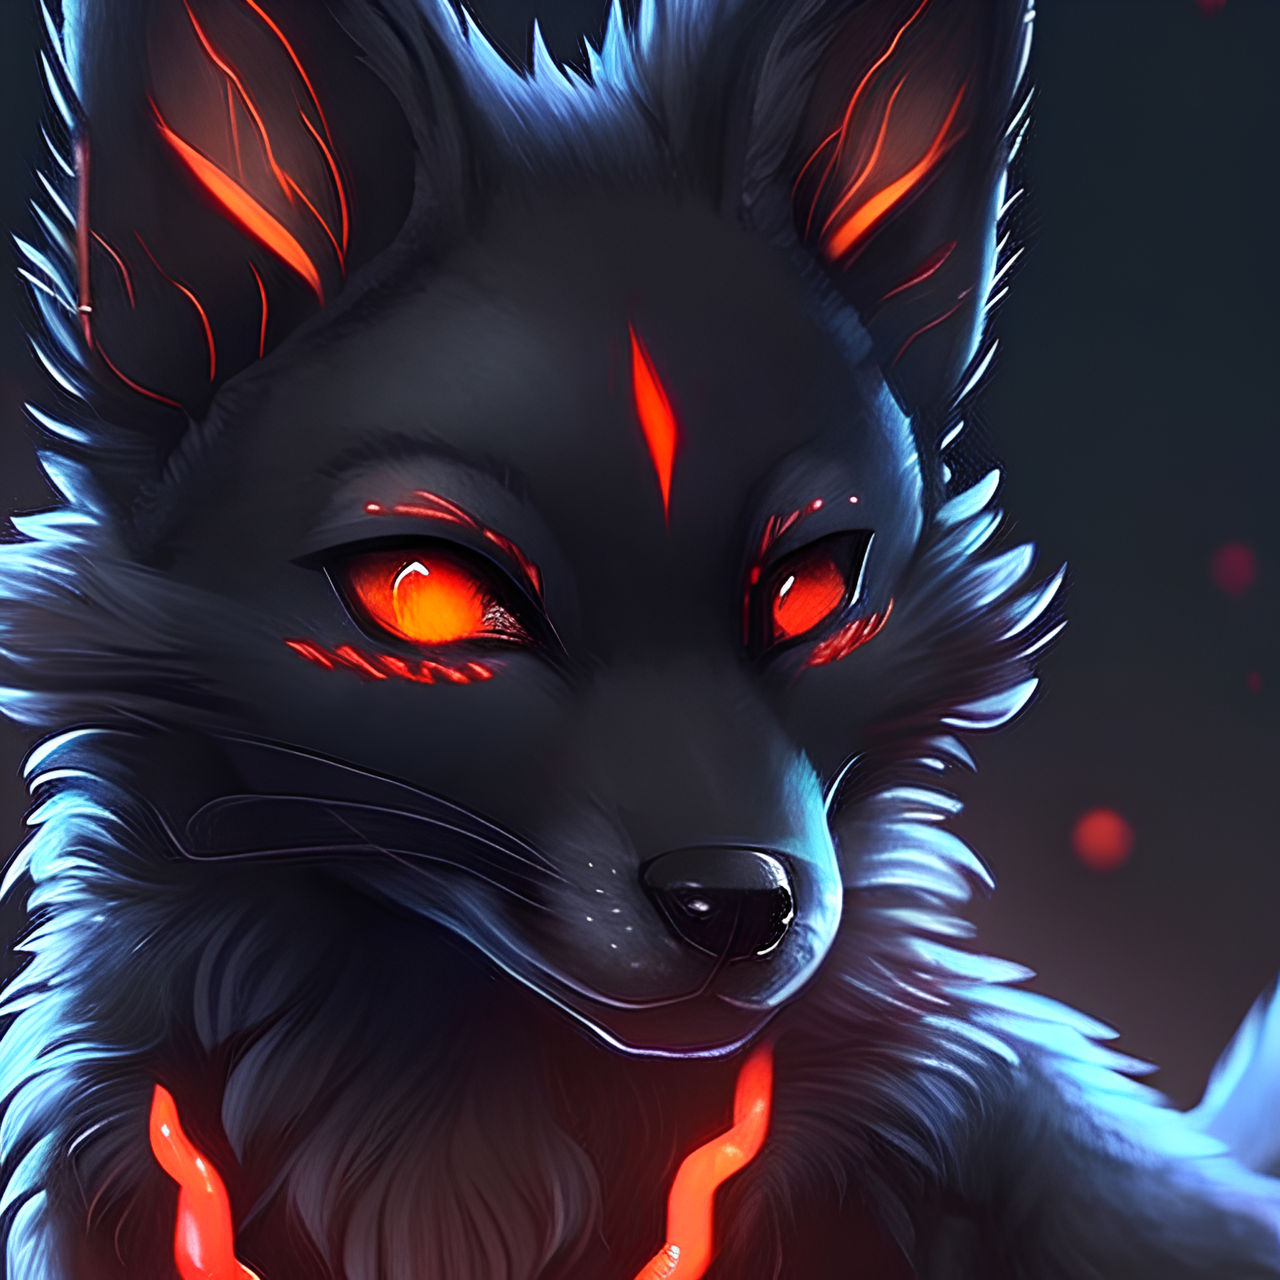 Black Fox Demon by PunkerLazar on DeviantArt